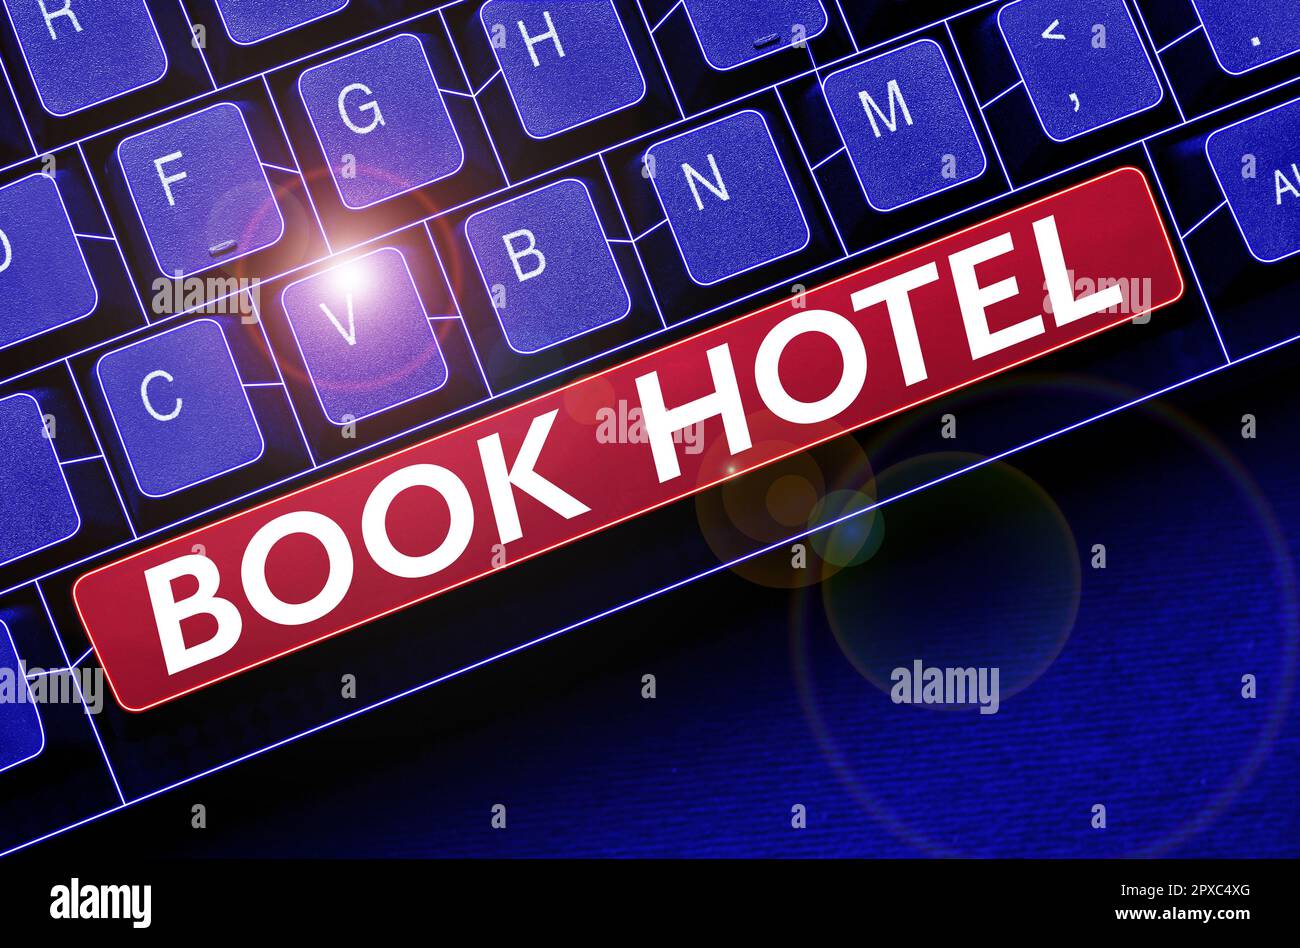 Schreiben mit Text Buchen Sie Hotel, Geschäftsidee ein Arrangement, das Sie für ein Hotelzimmer oder eine Unterkunft treffen Stockfoto